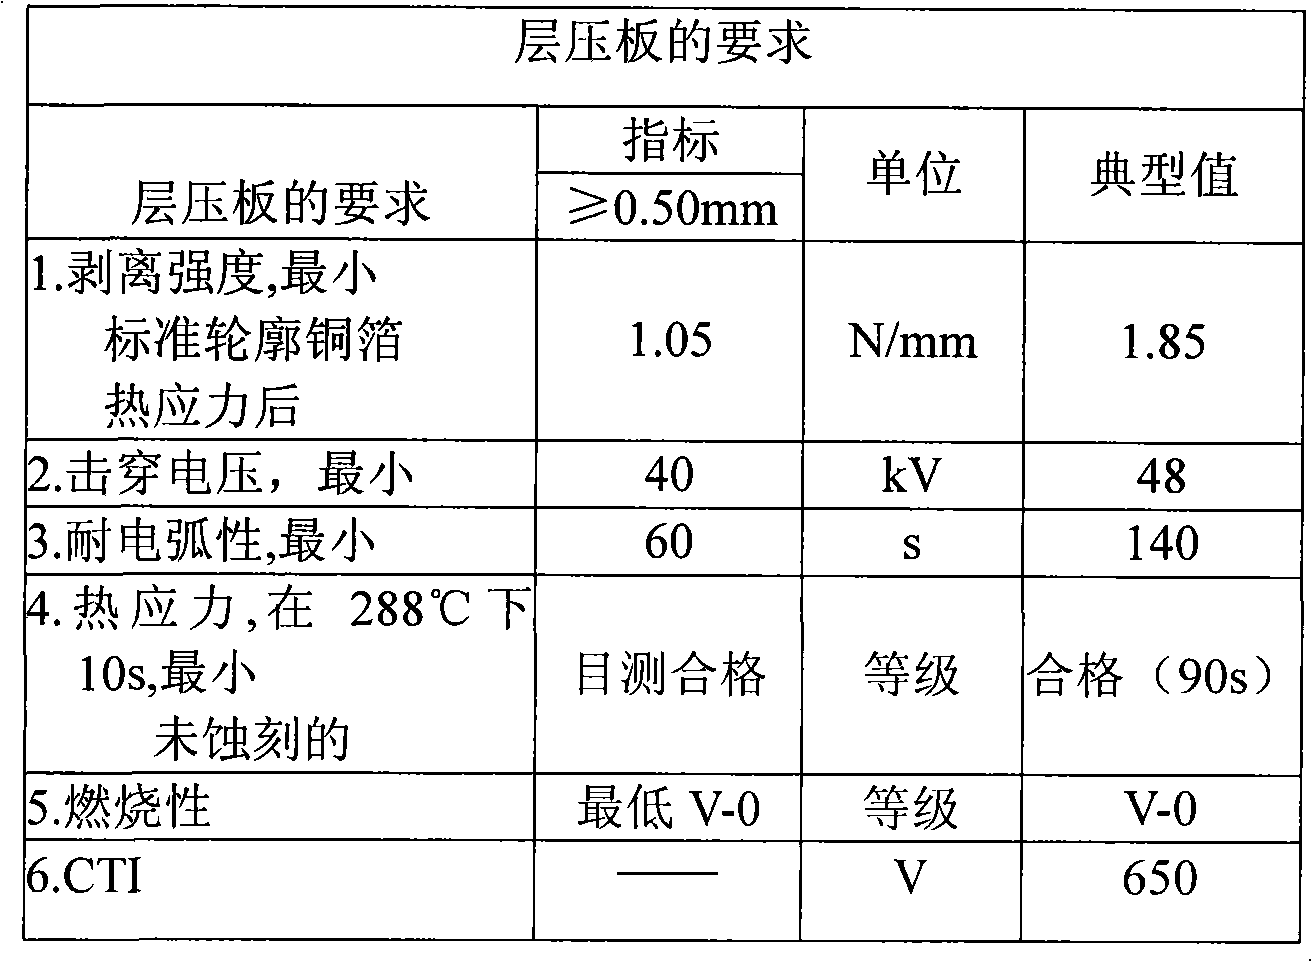 Method for manufacturing CTI copper-clad laminate